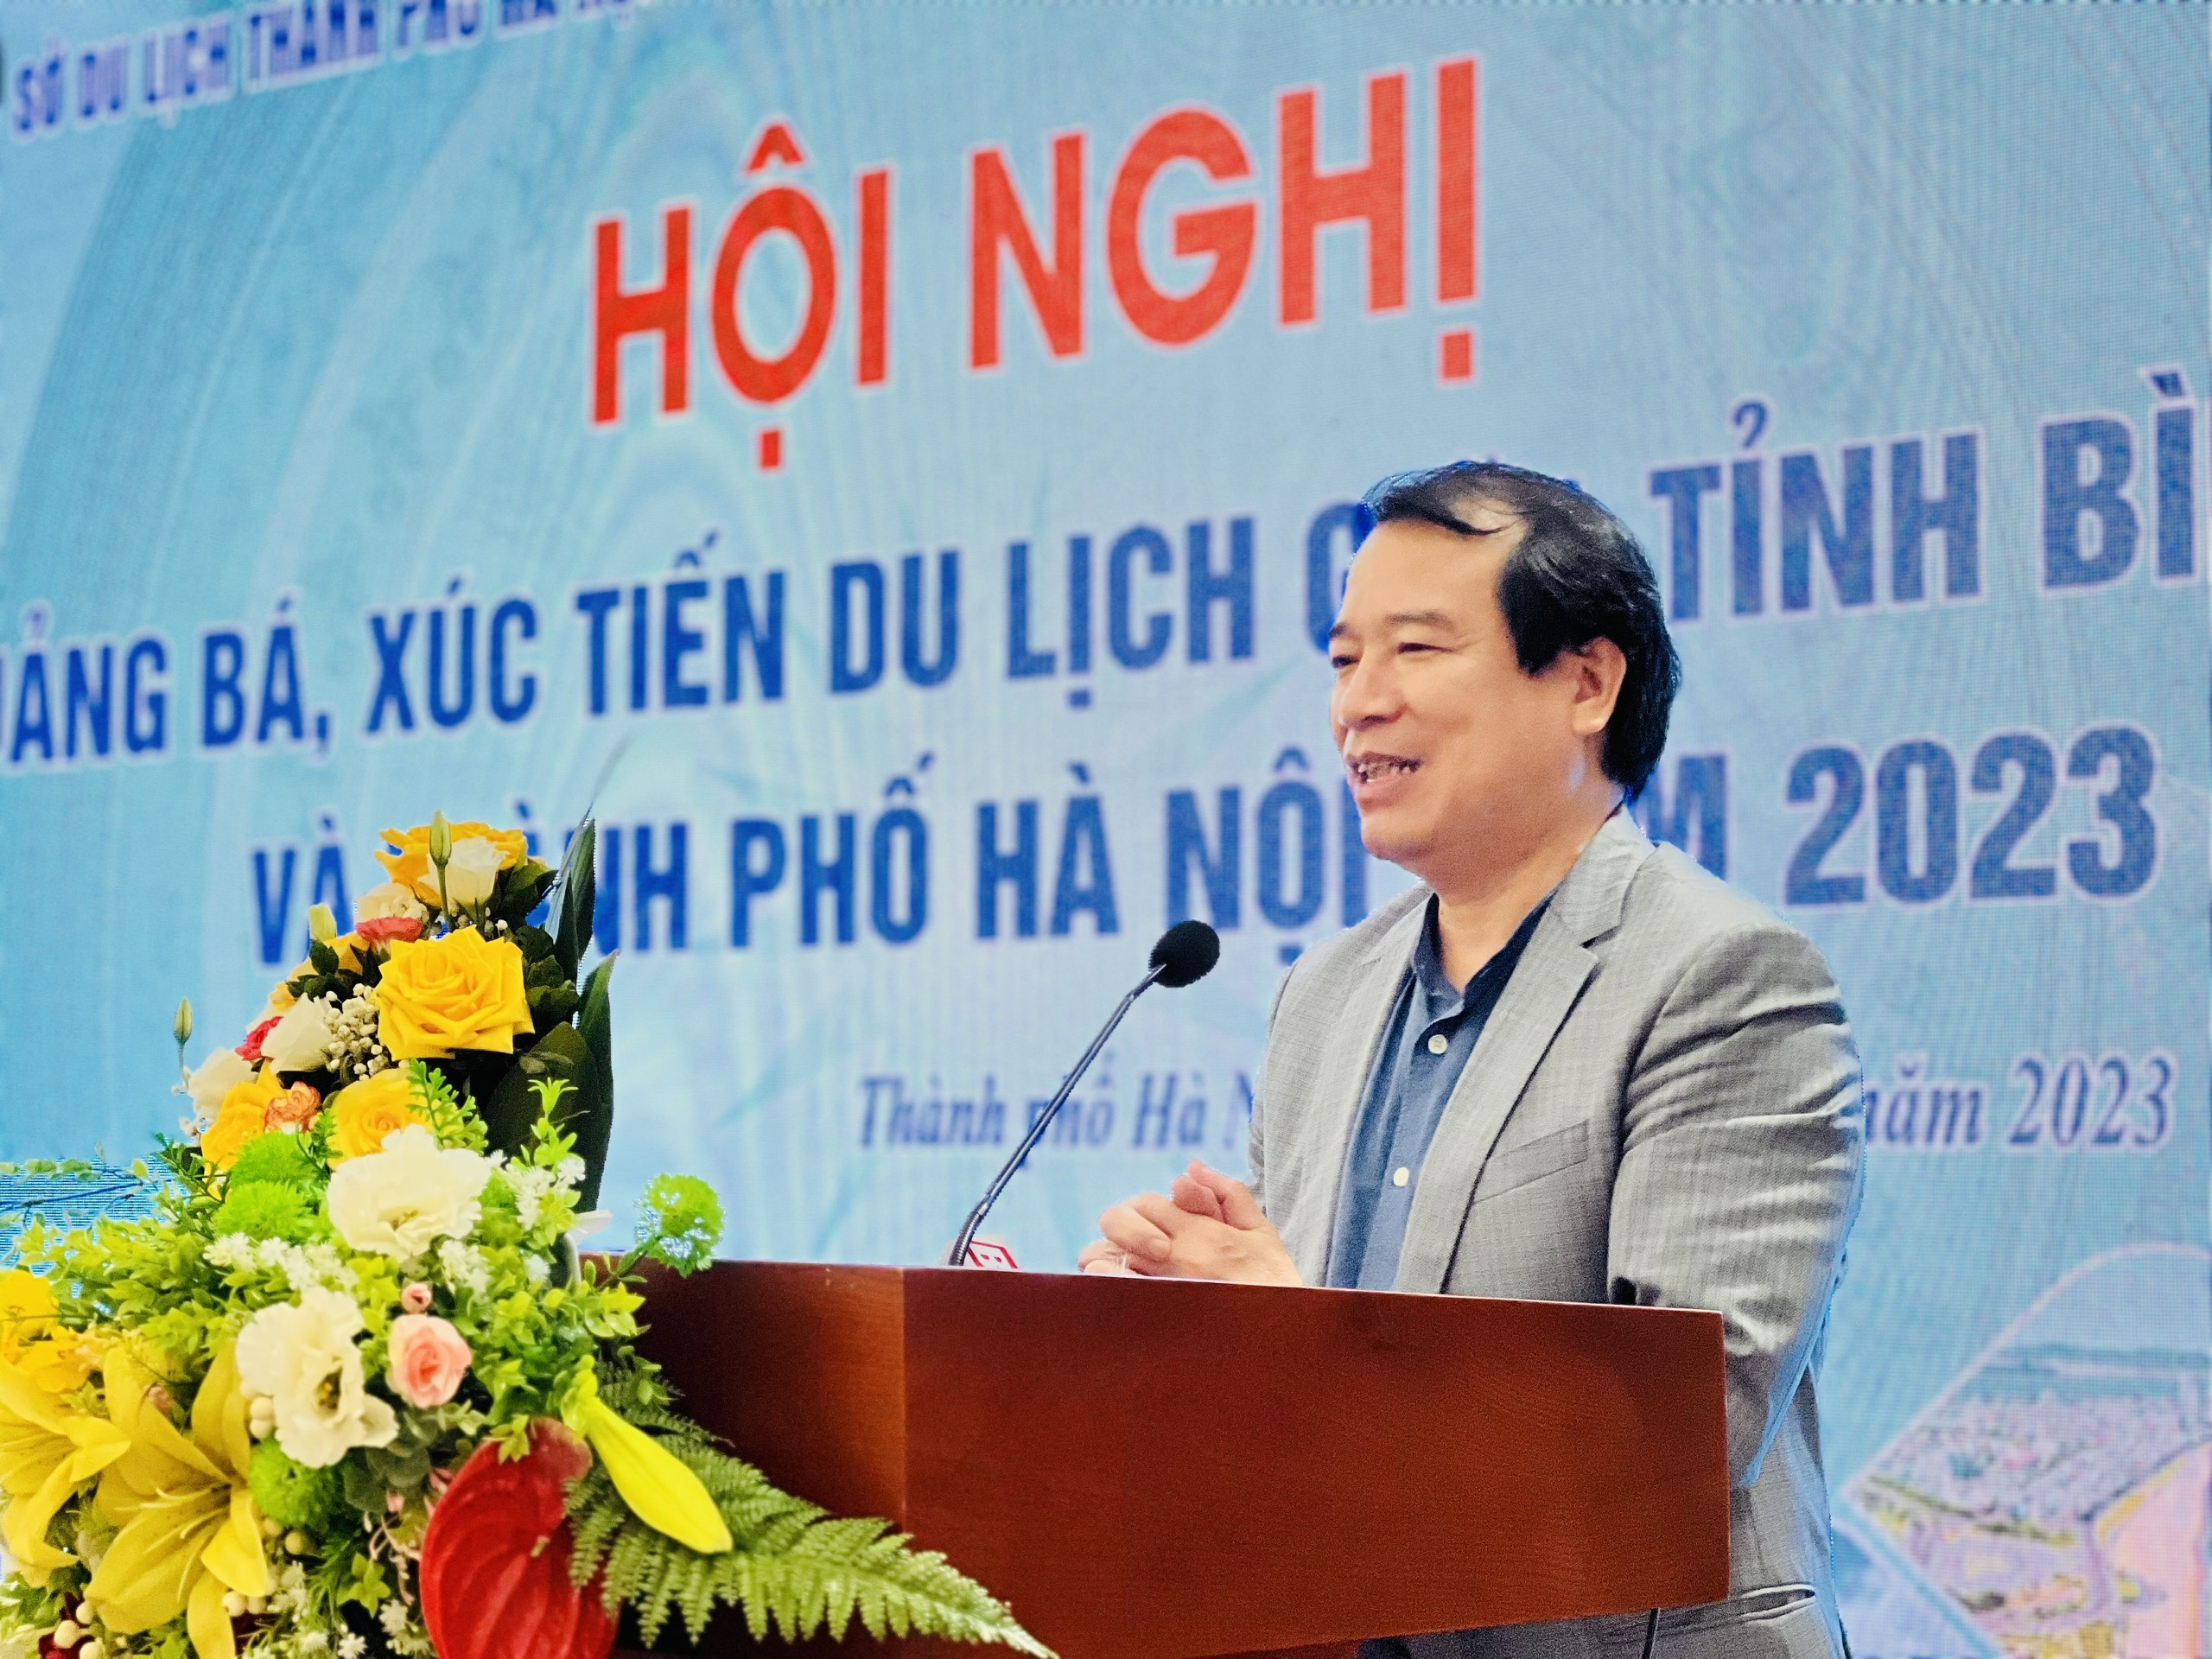 Ông Hà Văn Siêu – Phó Tổng cục trưởng Tổng cục Du lịch ghi nhận và đánh giá cao sự chủ động, tích cực liên kết, sáng tạo của du lịch thành phố Hà Nội và tỉnh Bình Định